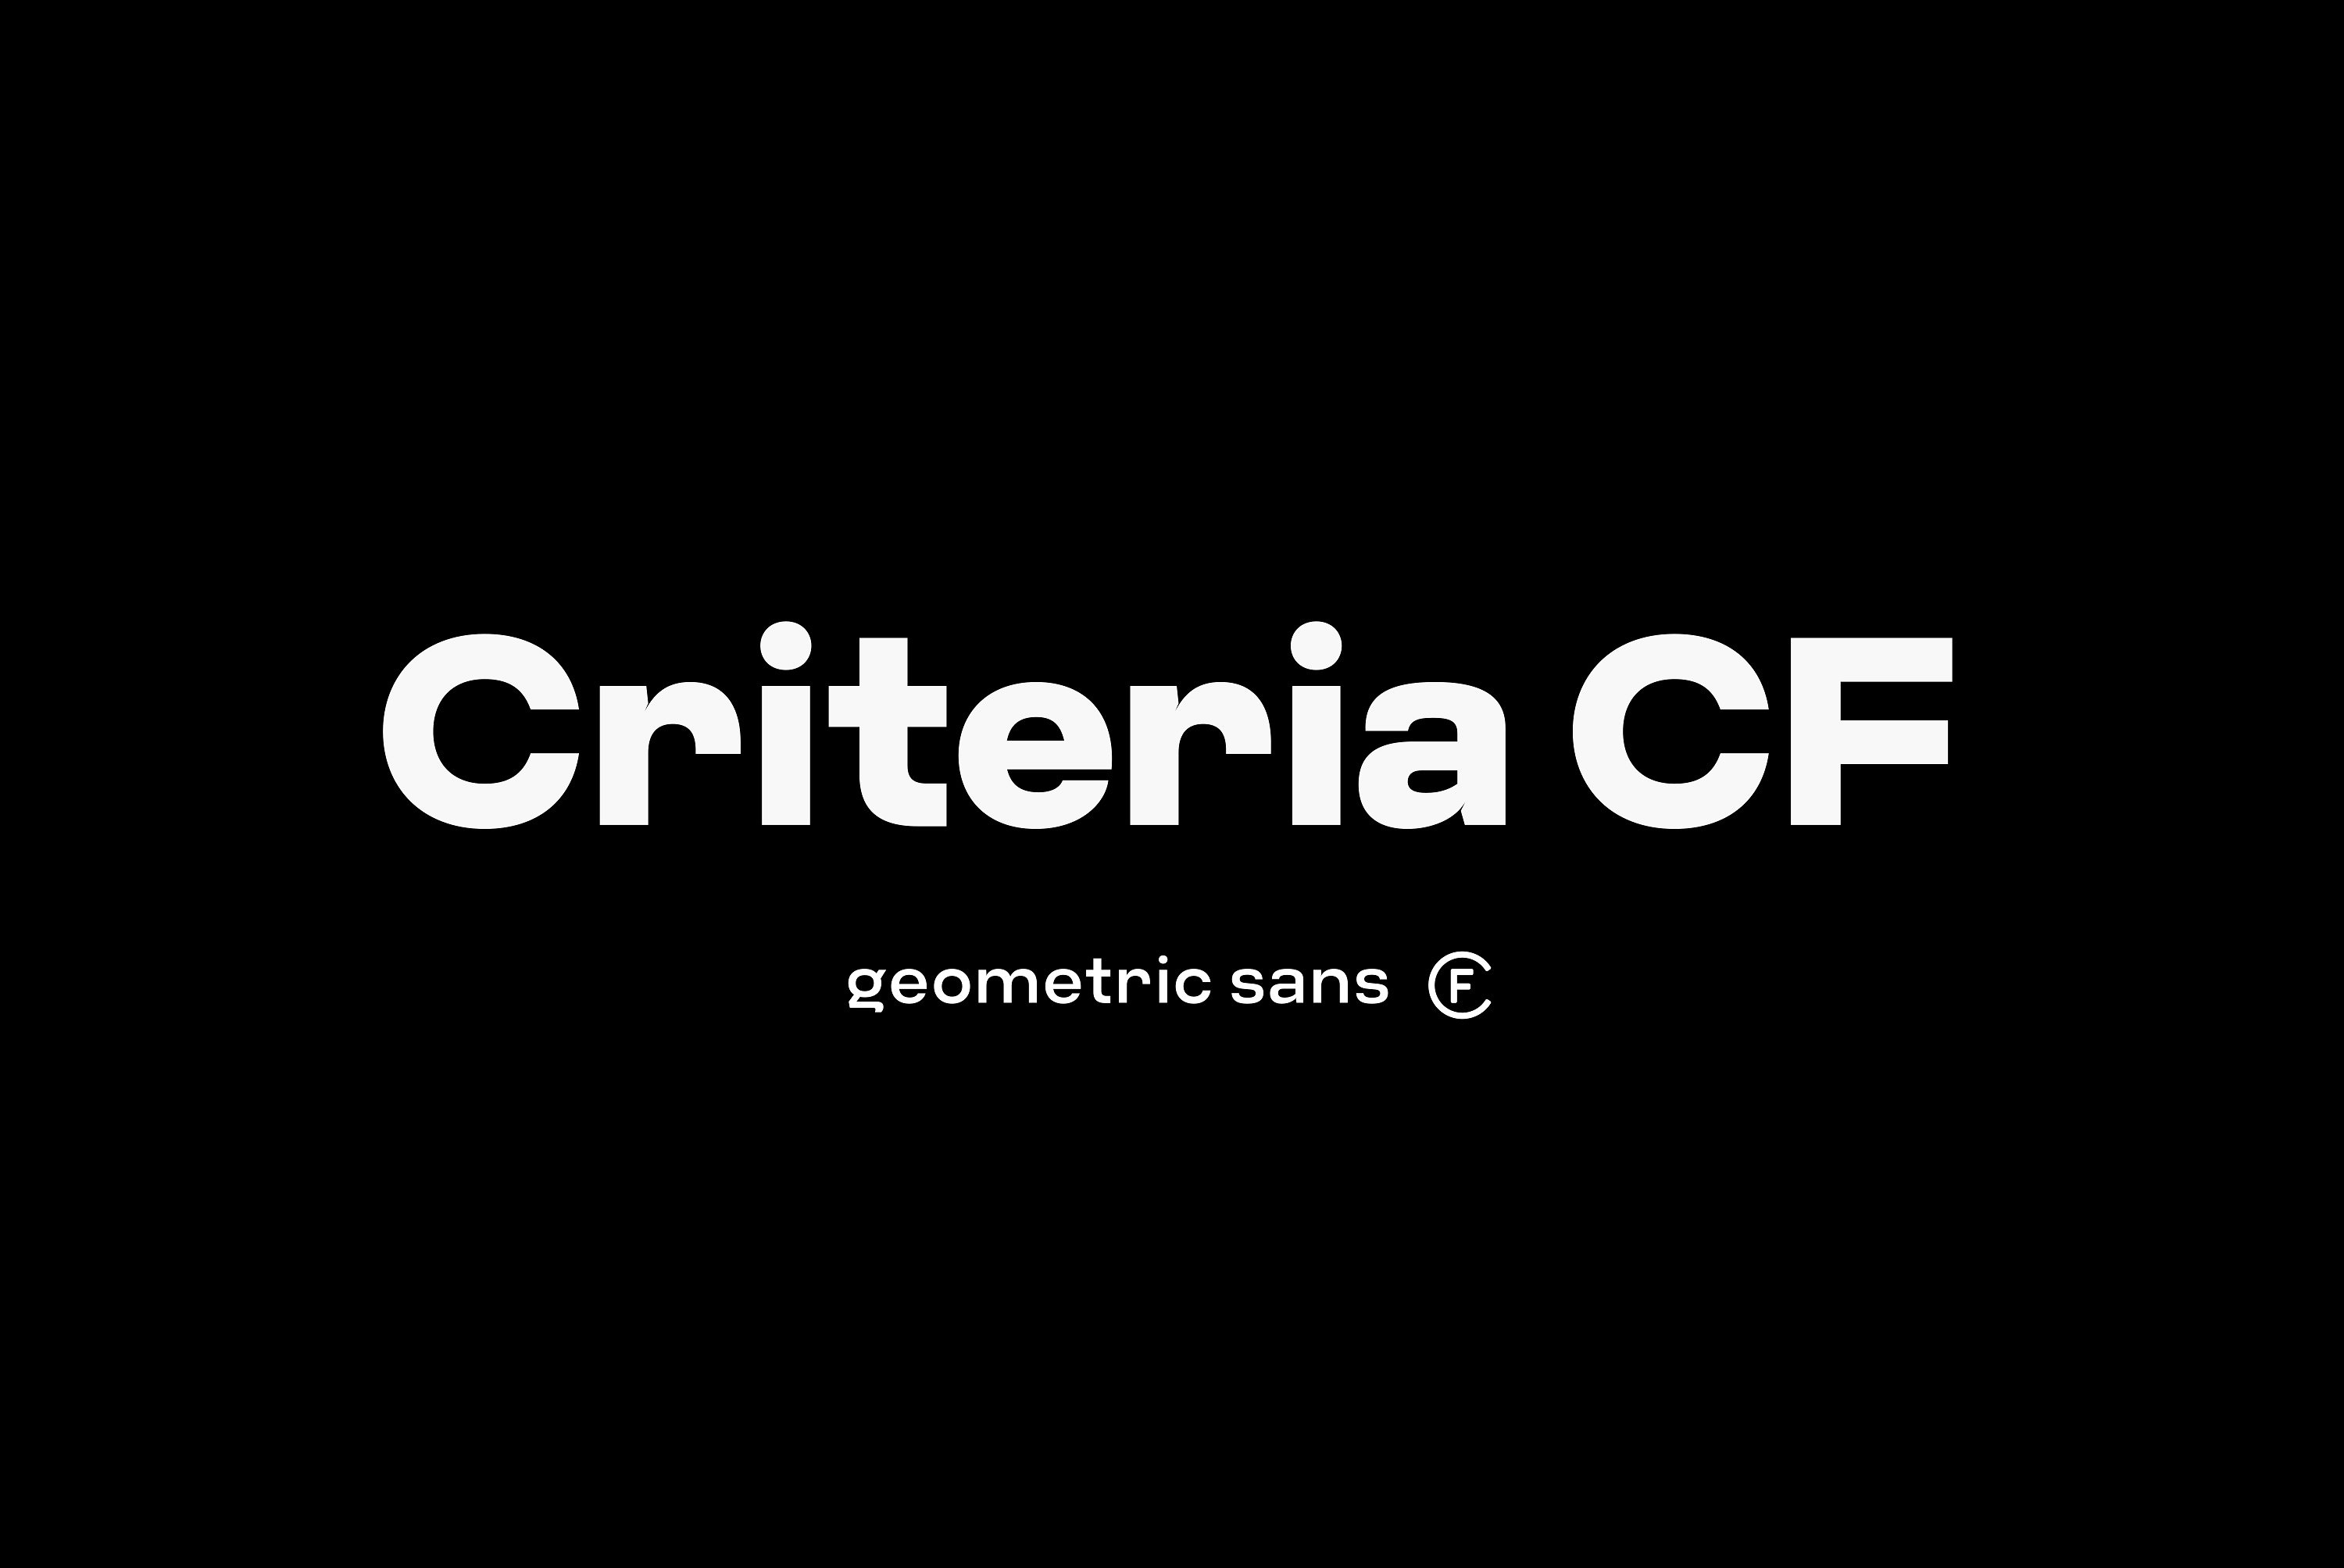 几何无衬线设计字体 Criteria CF neo geom